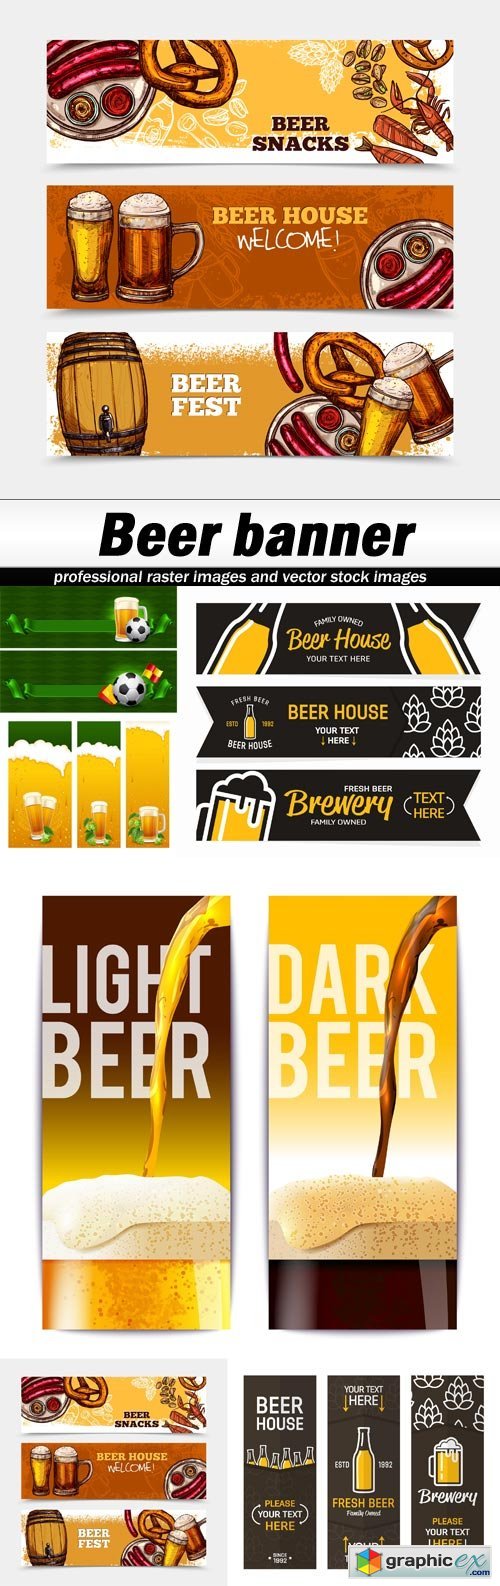 Beer banner